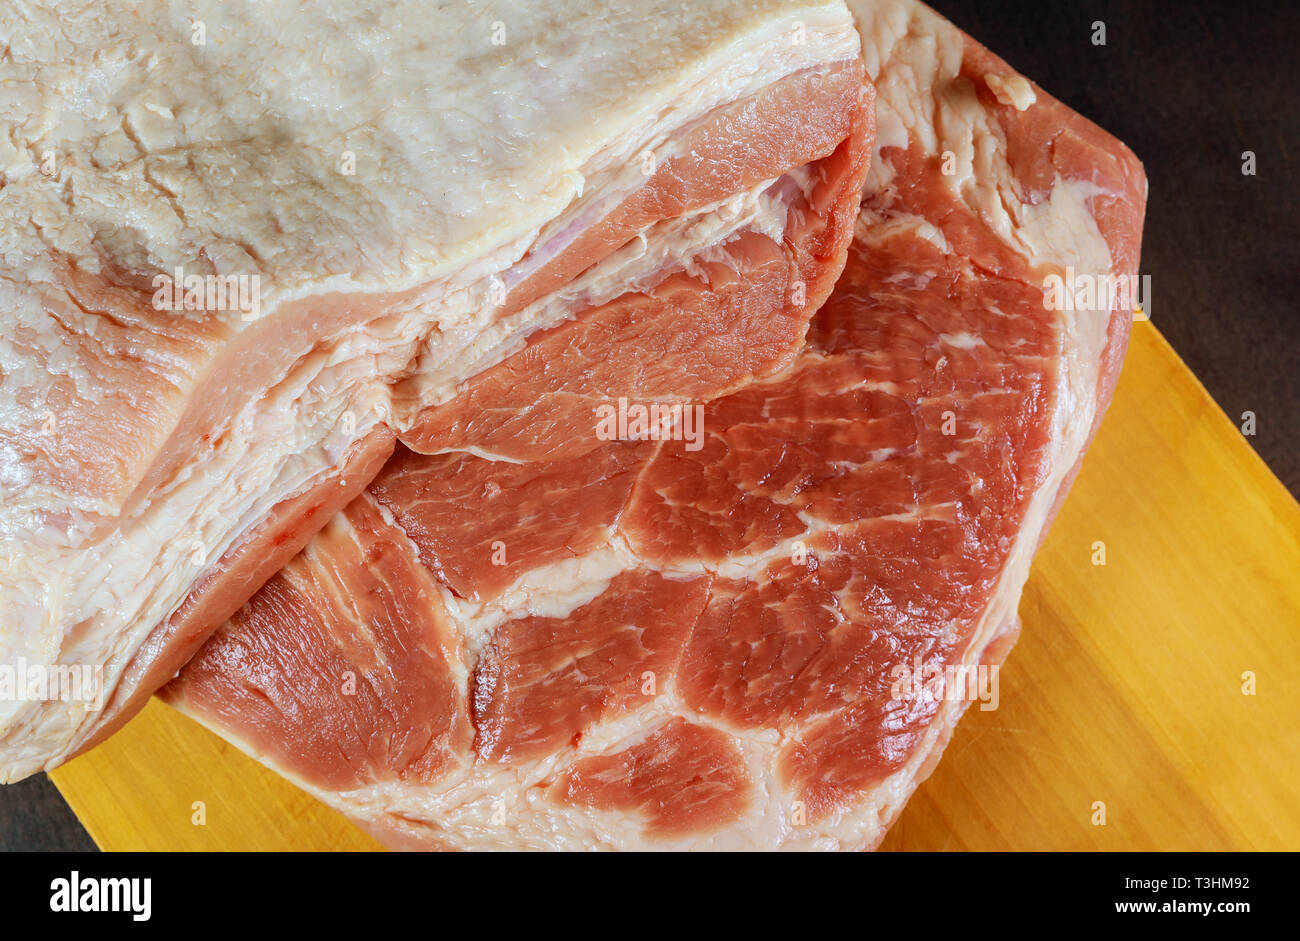 La carne de cerdo cruda sobre una tabla de madera Foto de stock